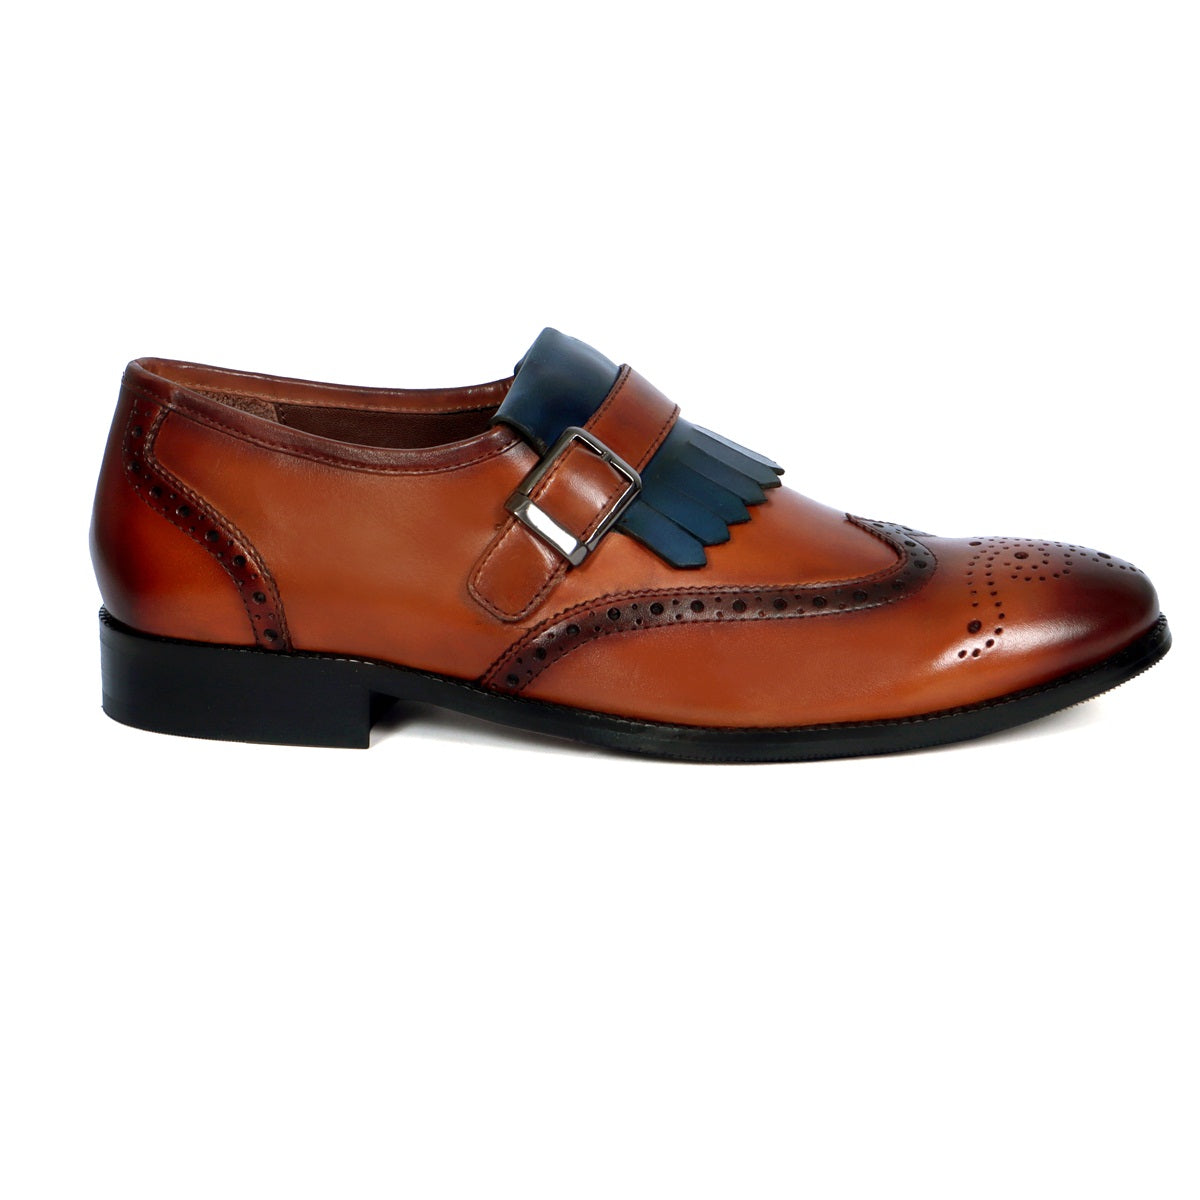 Leather Fringes | Buy Fringe Shoes for Men Online at Voganow.com